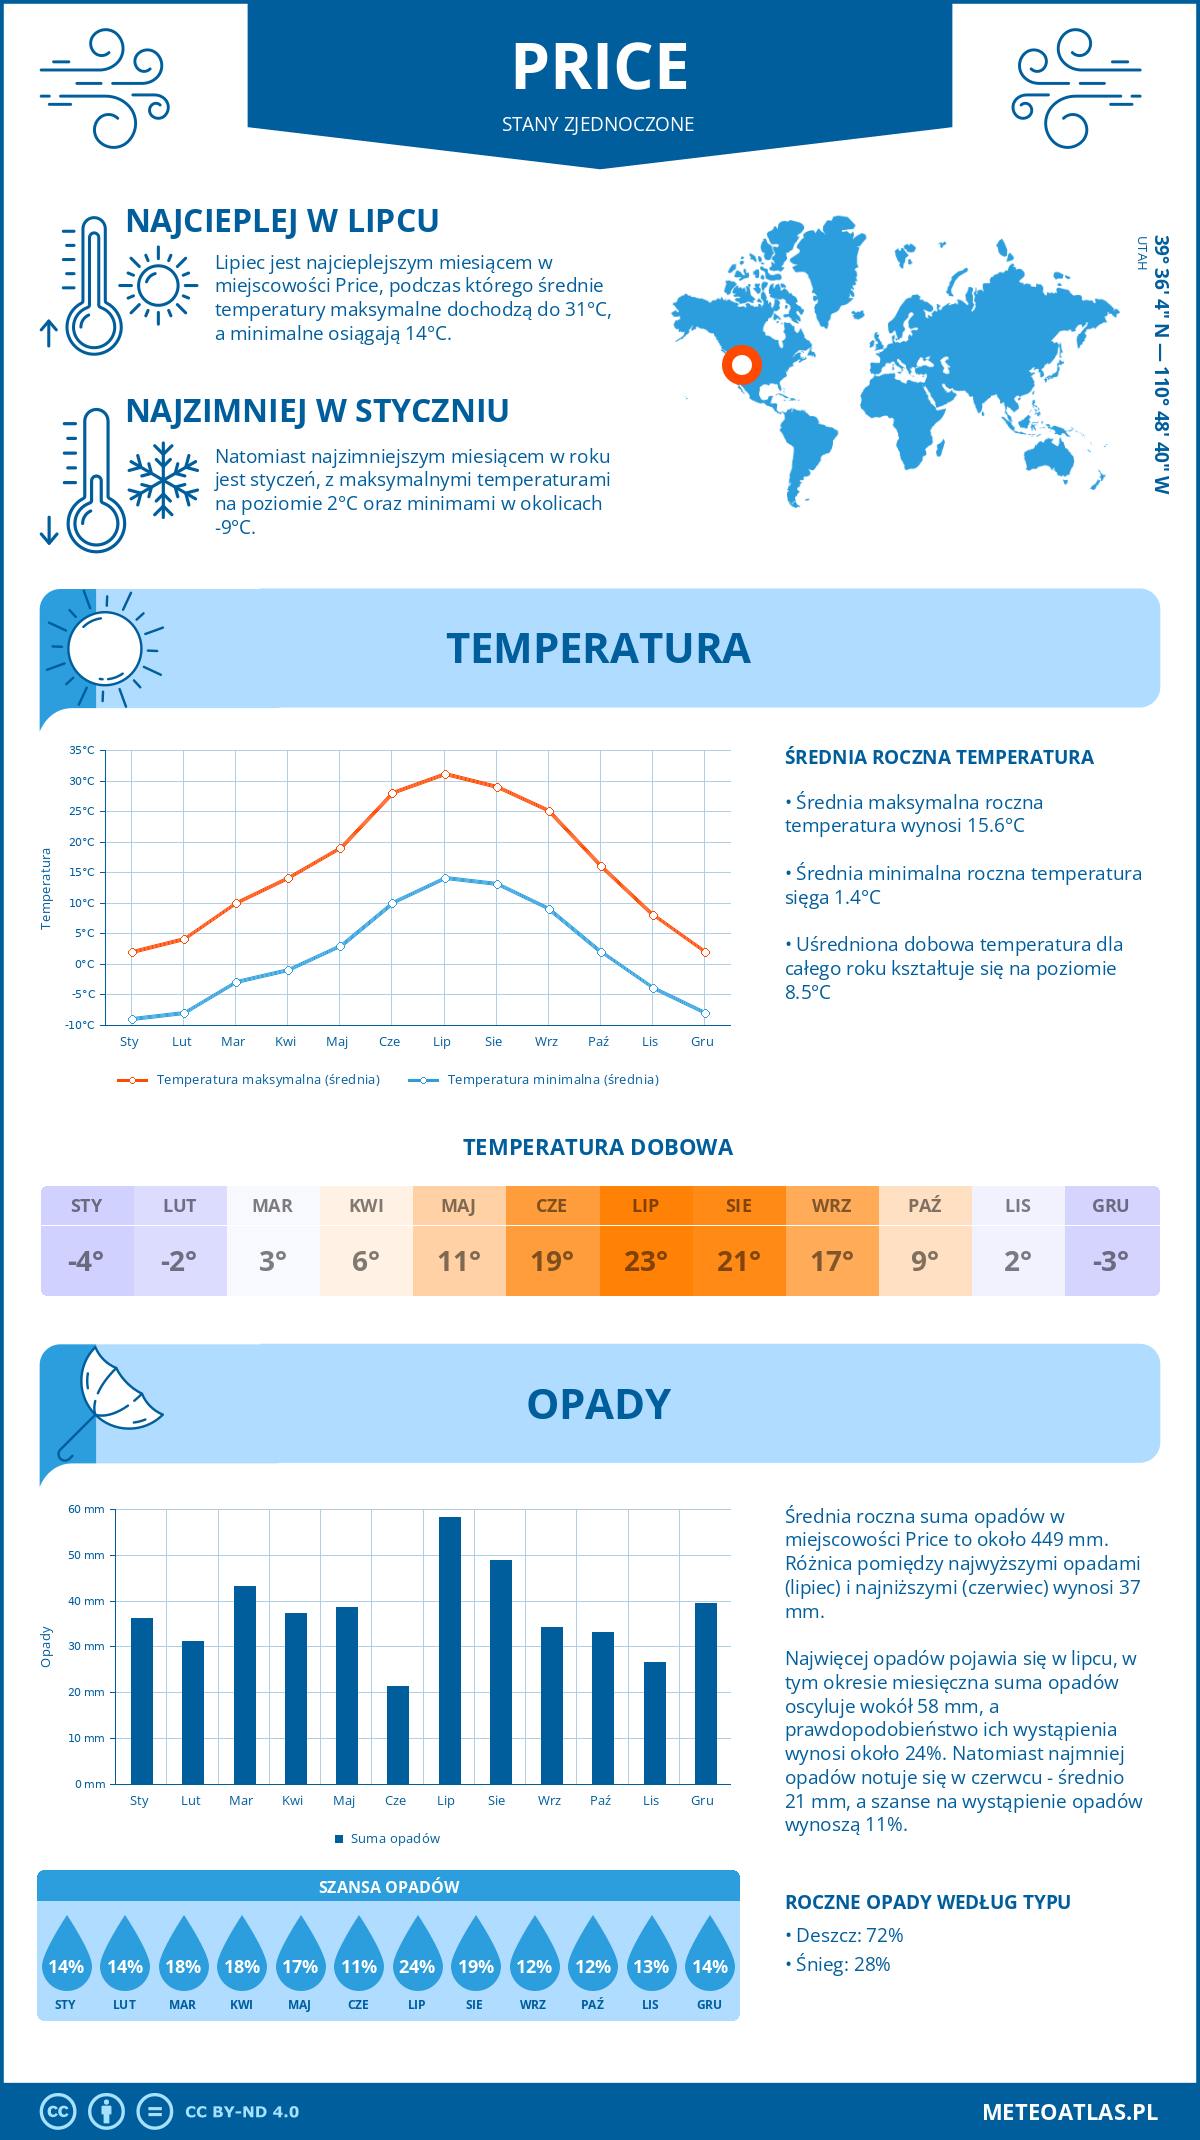 Pogoda Price (Stany Zjednoczone). Temperatura oraz opady.